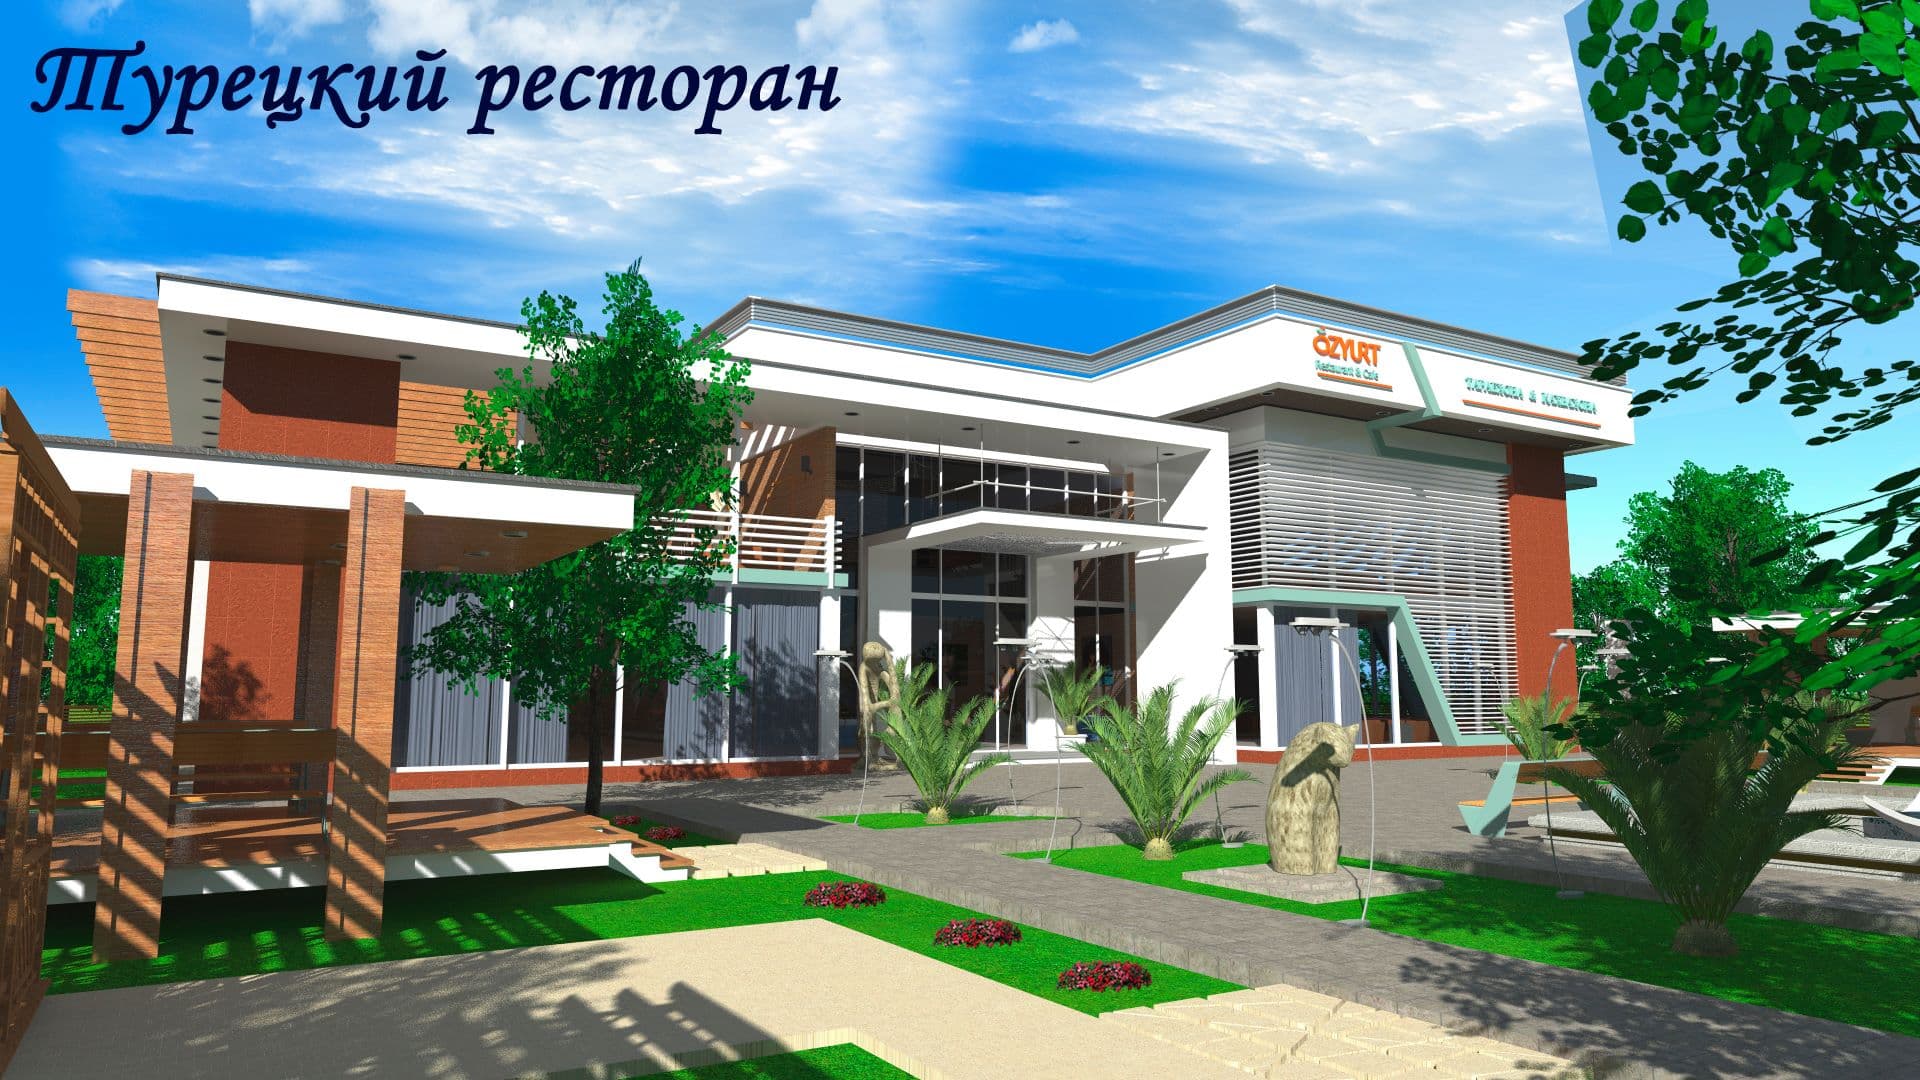 Мэр Душанбе построит в столице три роскошных ресторана